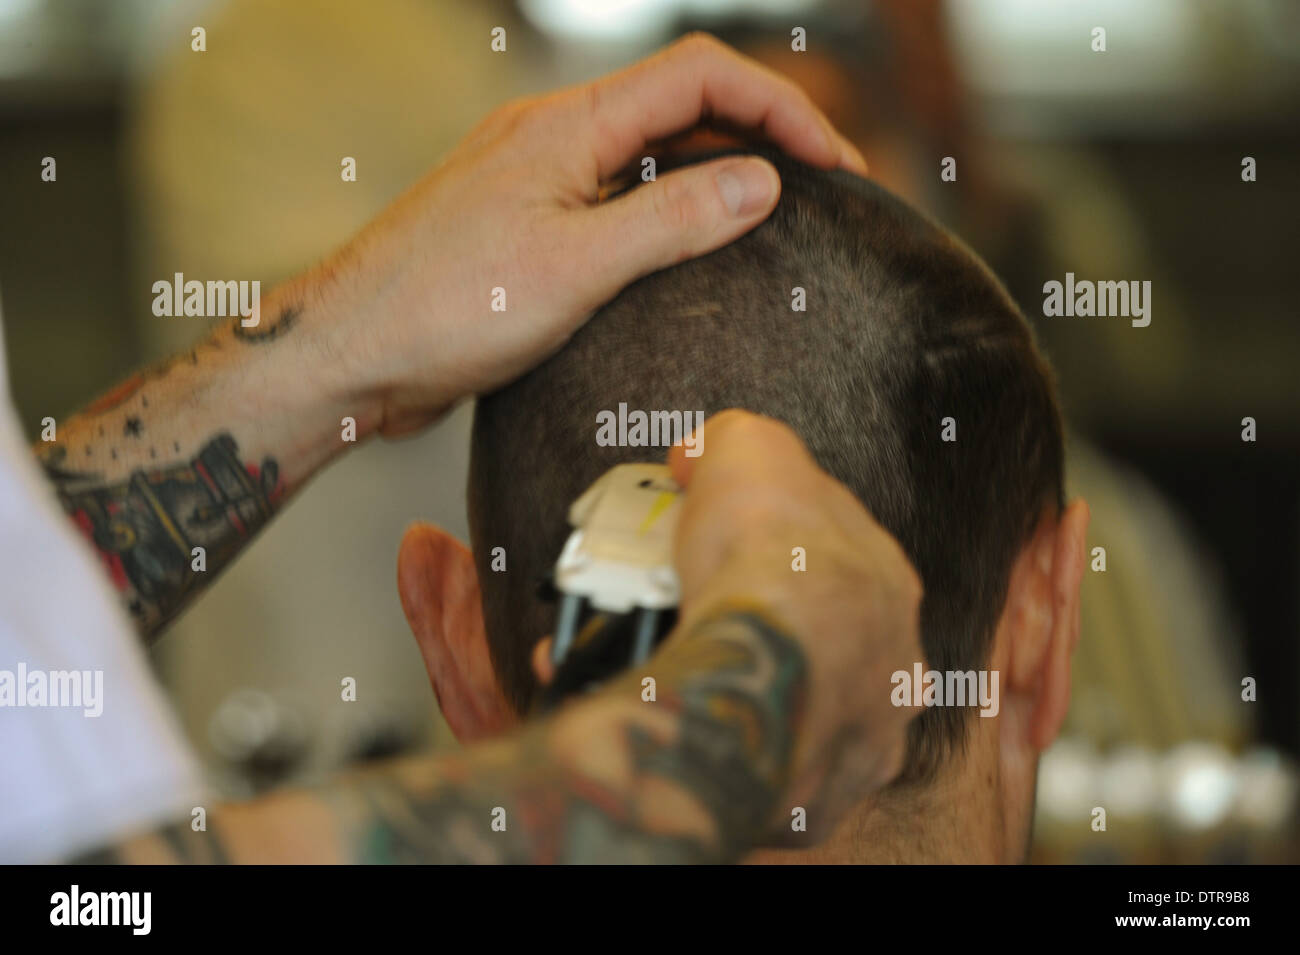 New York de coiffure à Rotterdam, tête de rasage. Usage éditorial uniquement. Banque D'Images